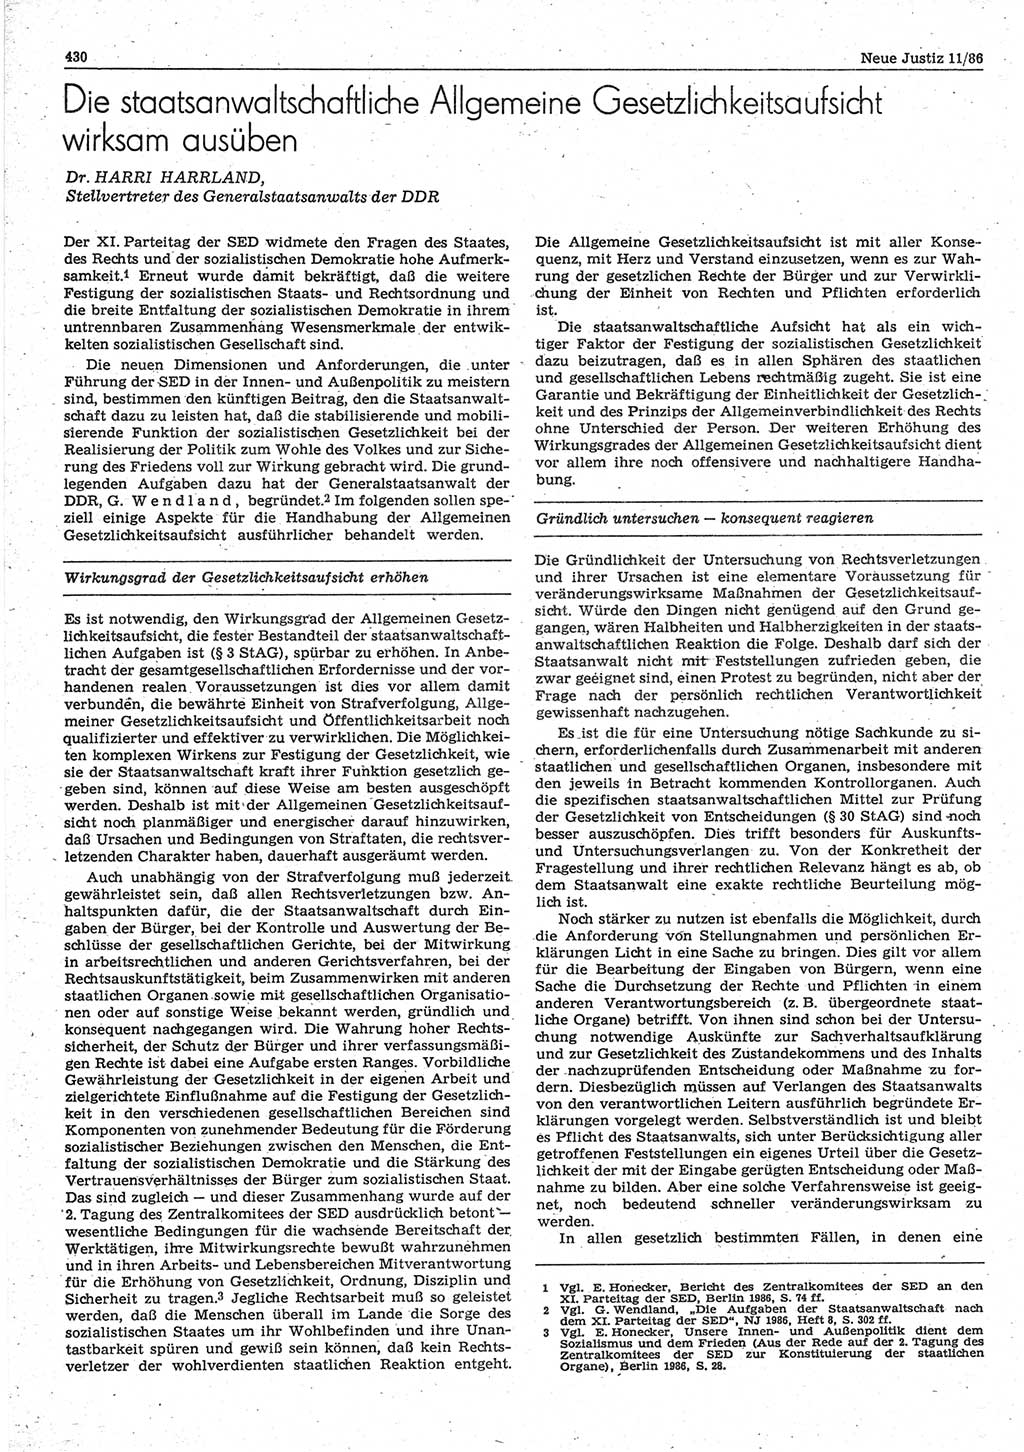 Neue Justiz (NJ), Zeitschrift für sozialistisches Recht und Gesetzlichkeit [Deutsche Demokratische Republik (DDR)], 40. Jahrgang 1986, Seite 430 (NJ DDR 1986, S. 430)